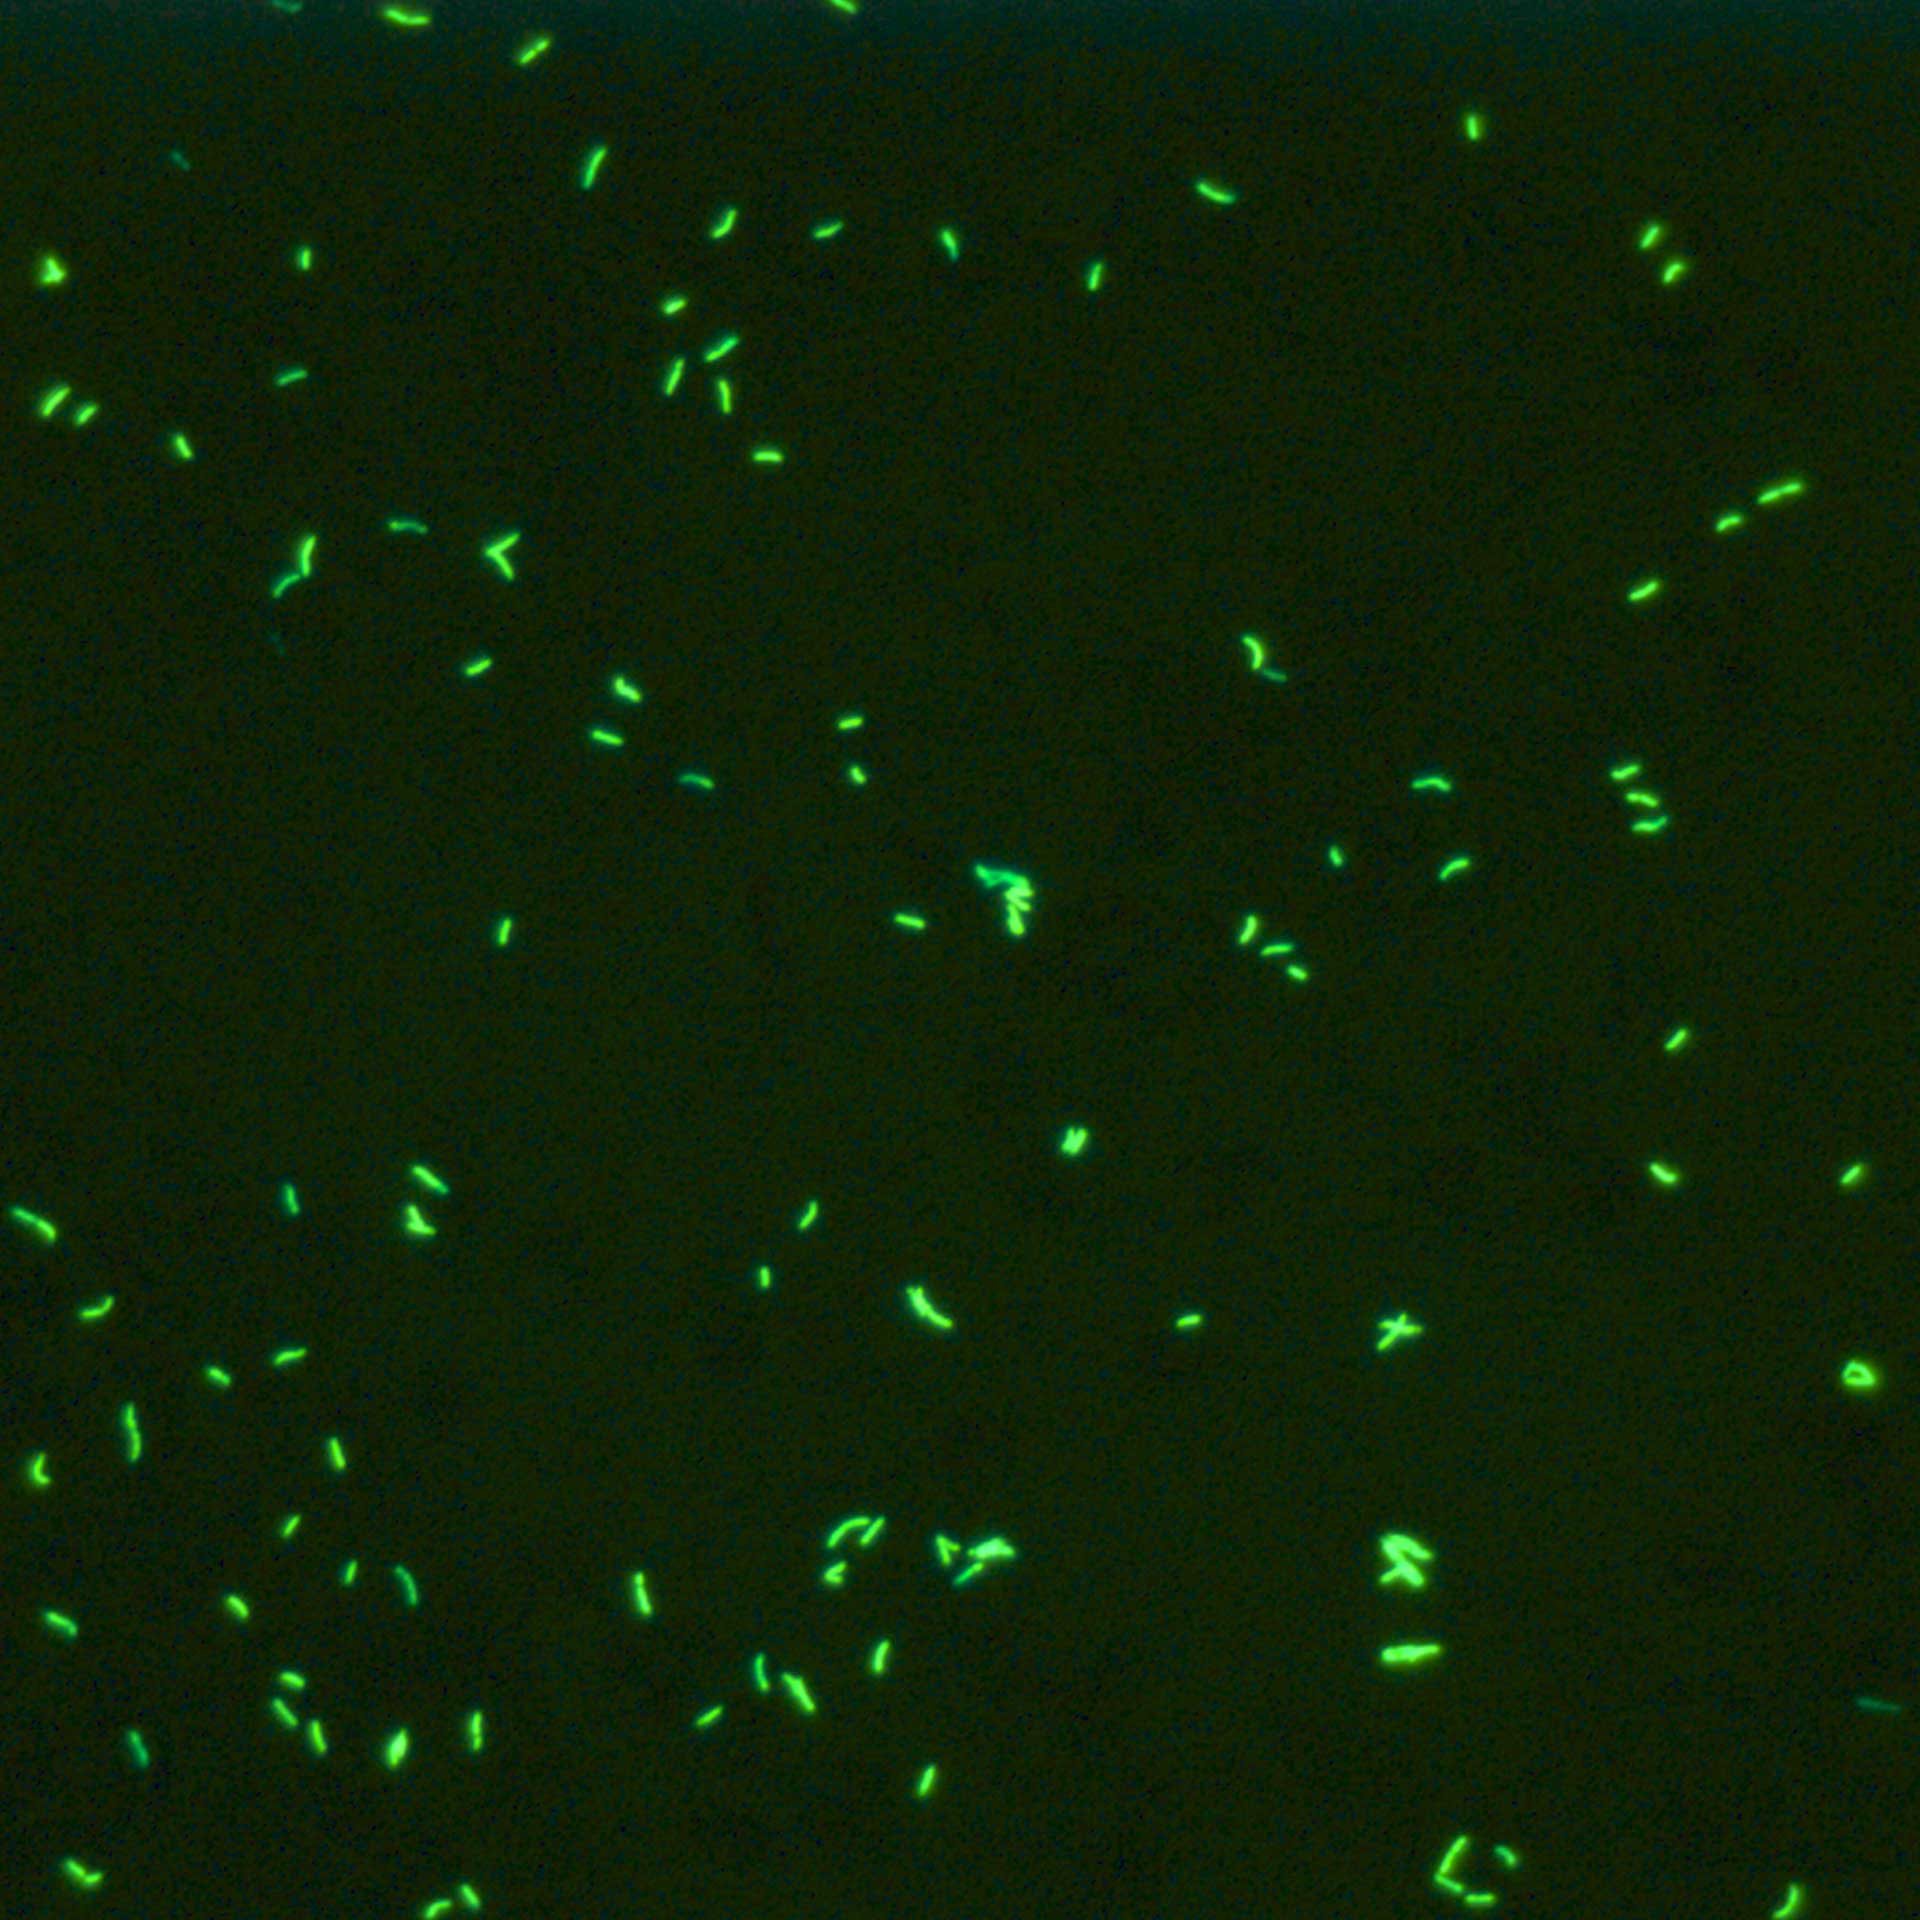 荧光观察结核杆菌的典型示例